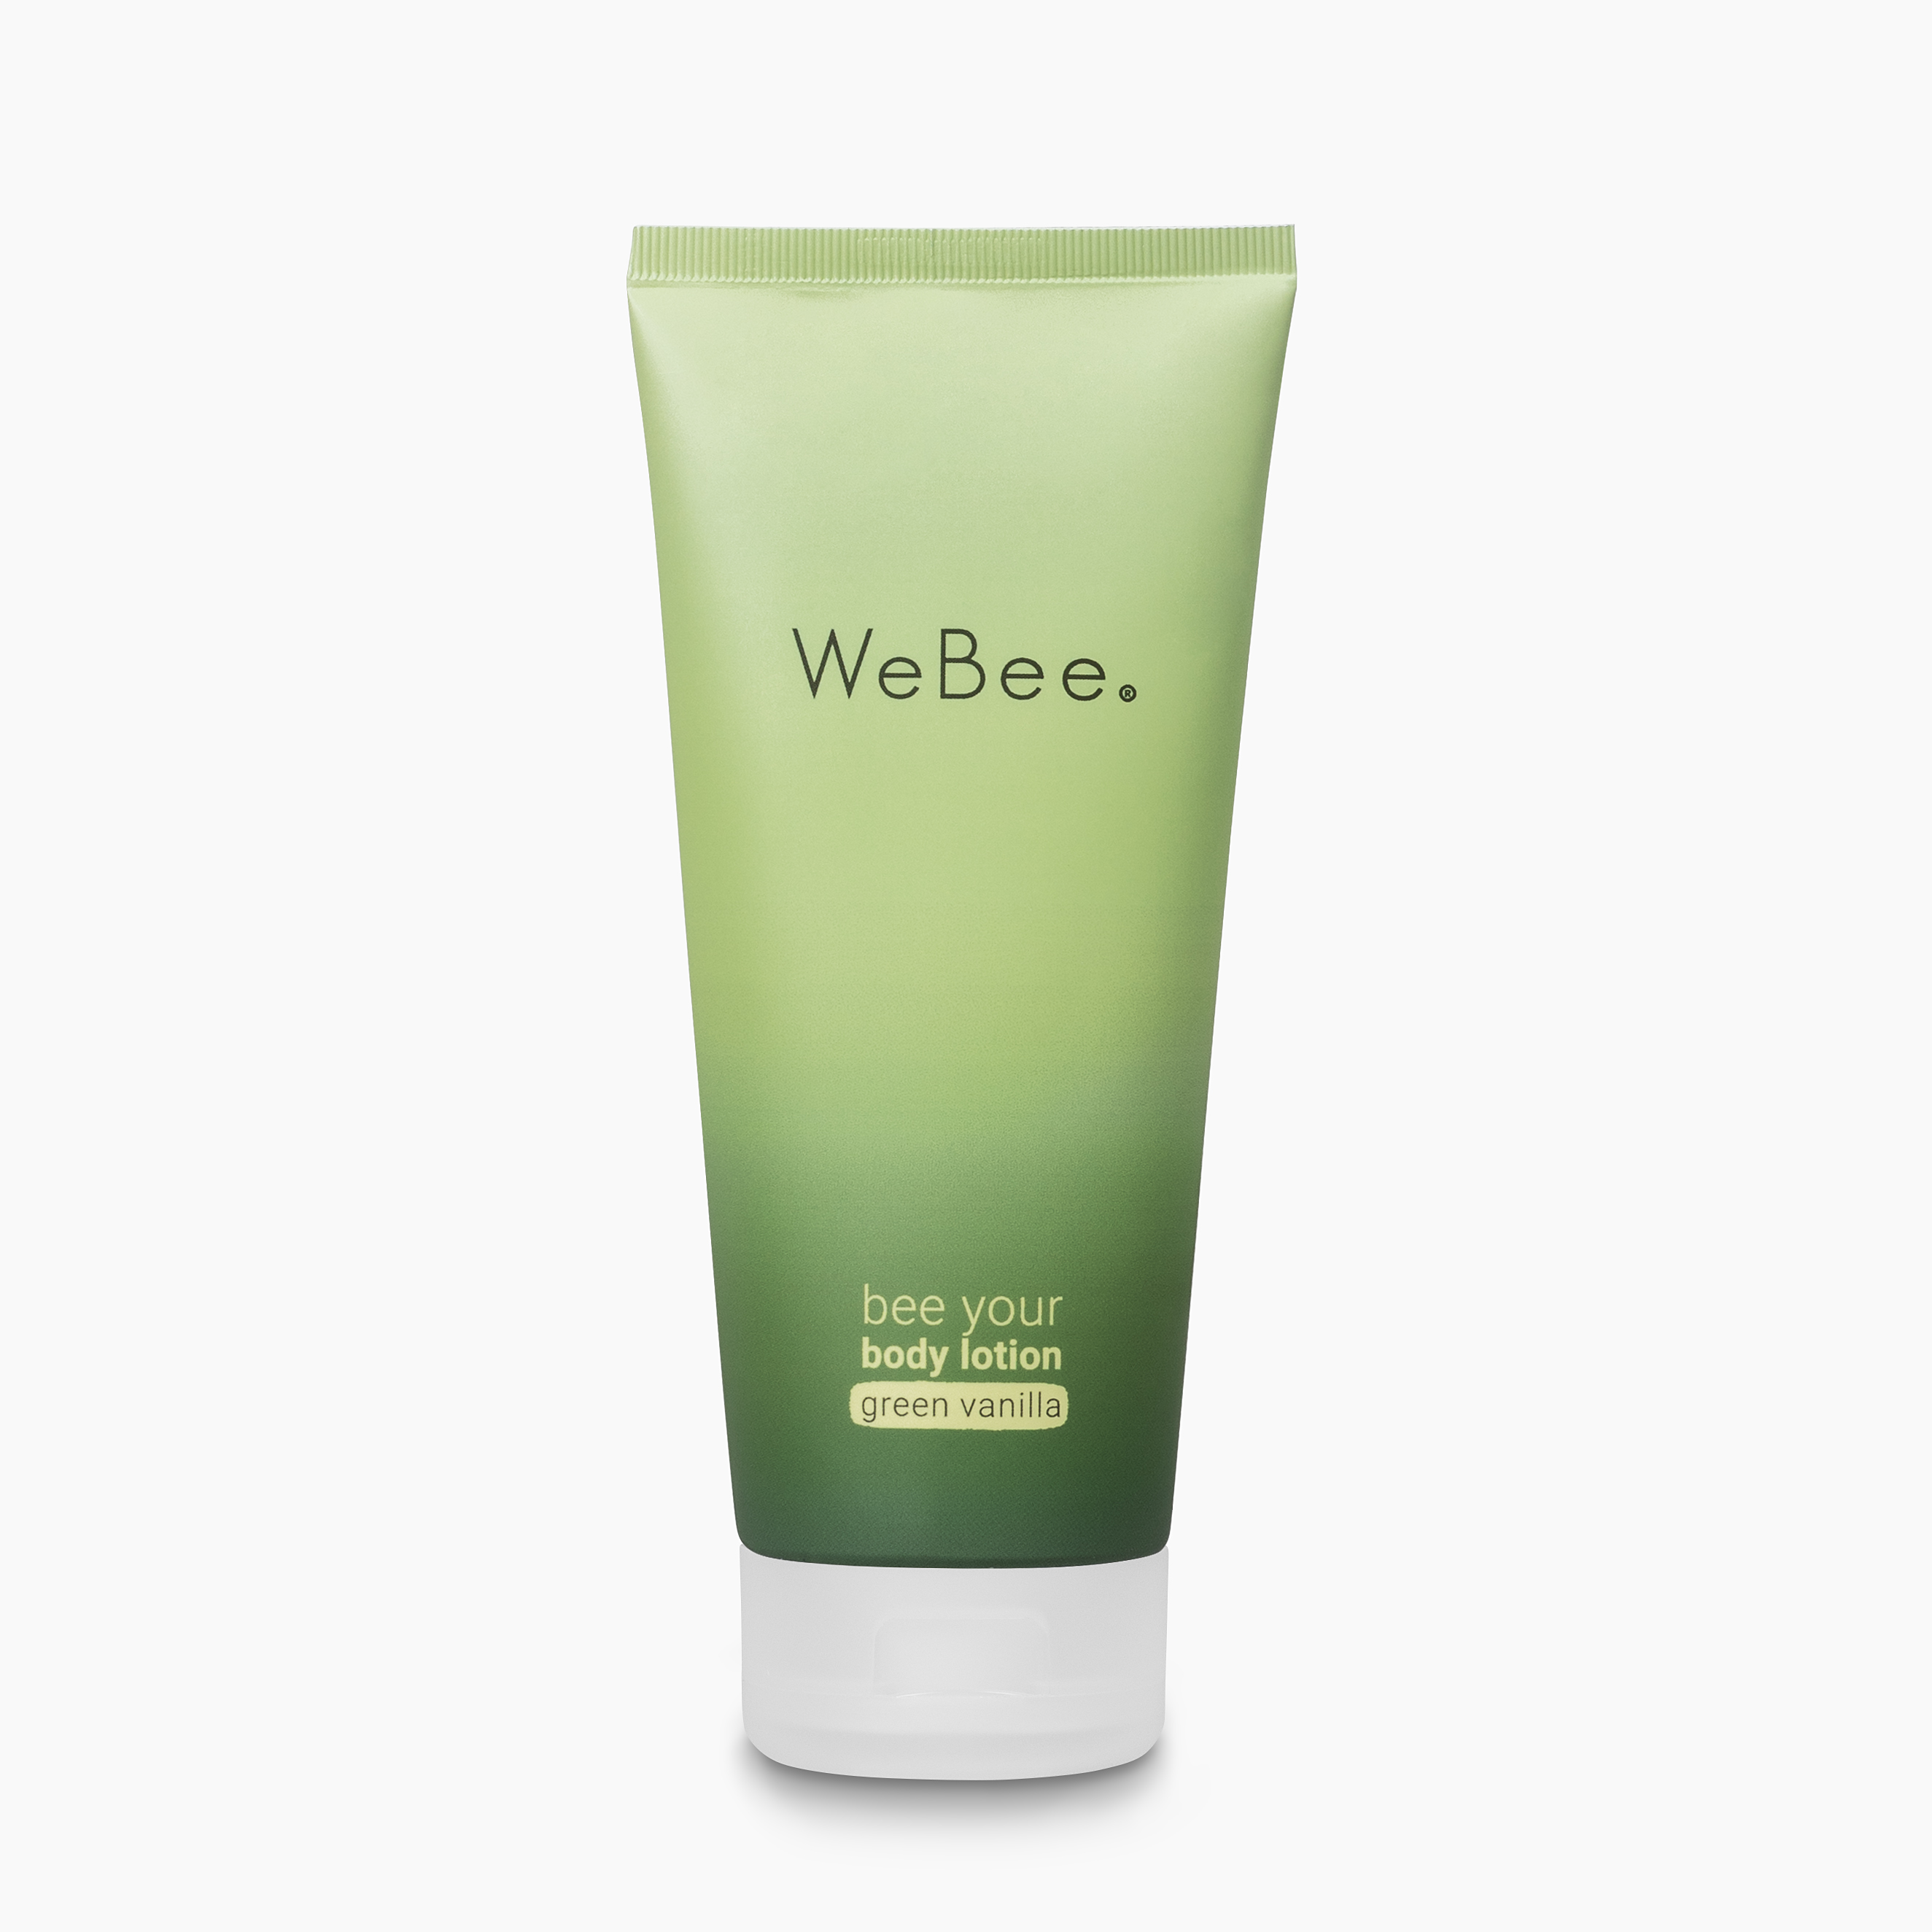 Ihr Geschenk: WeBee bee your body lotion - green vanilla